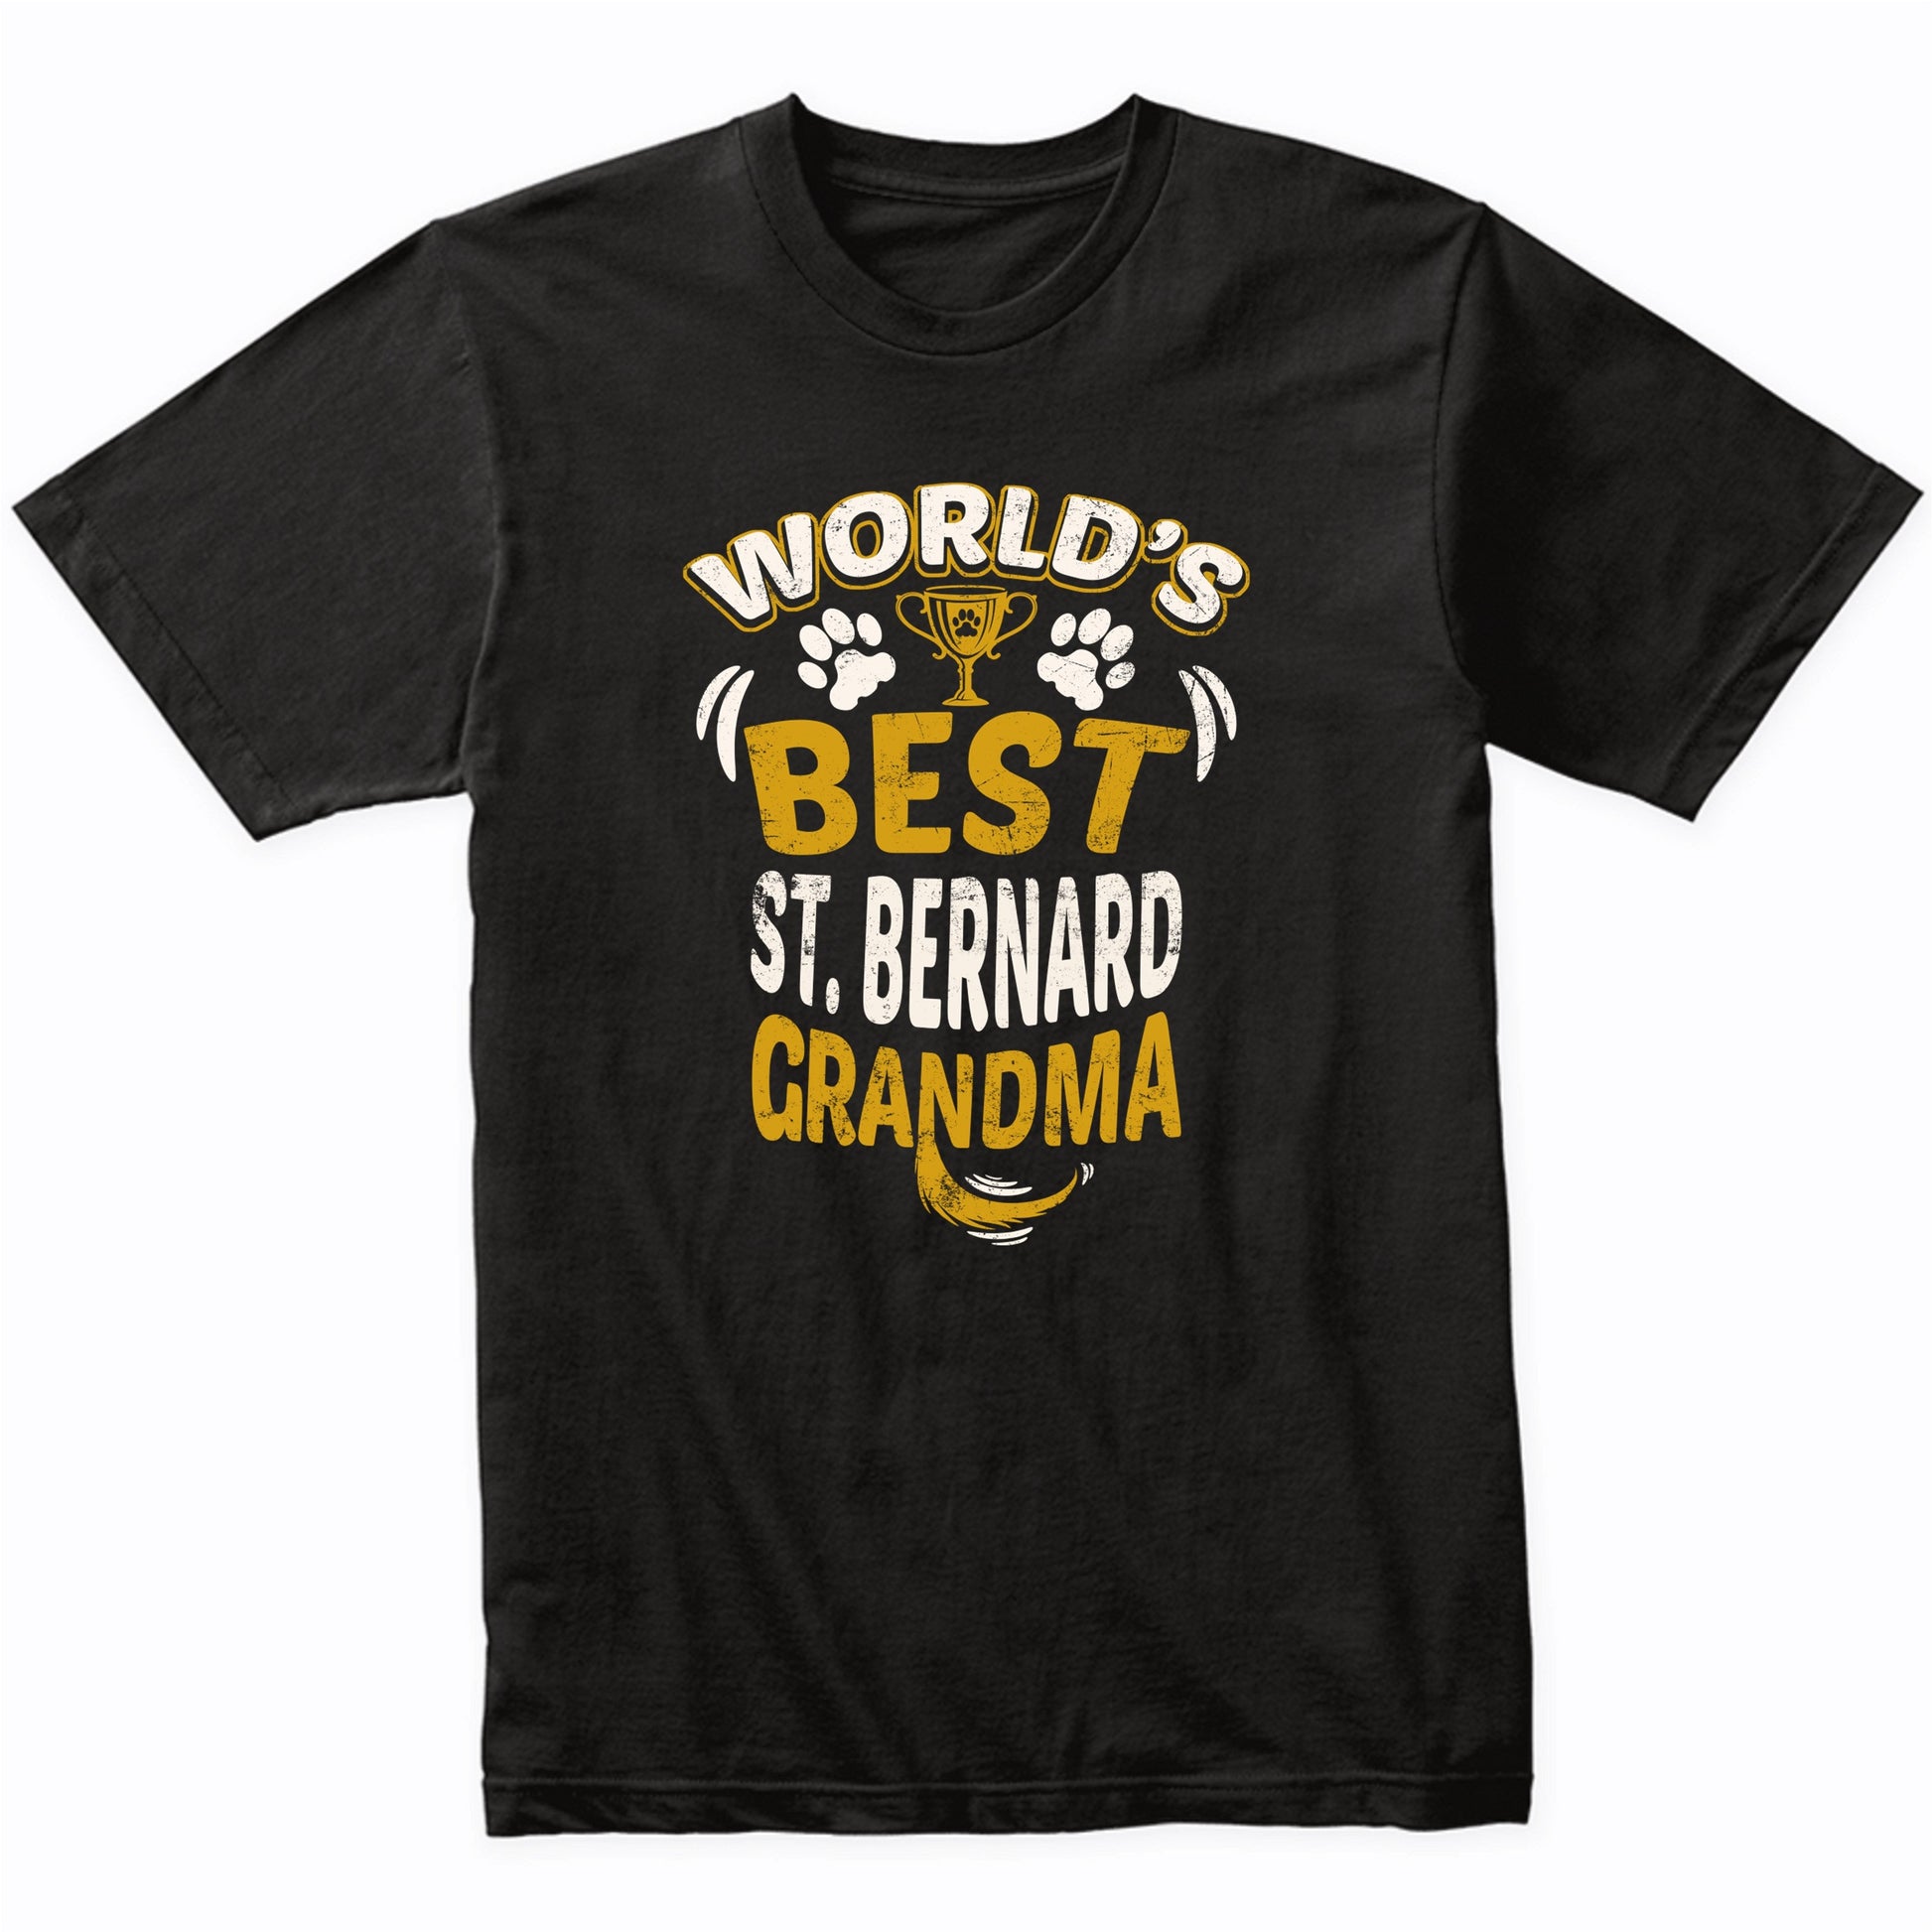 World's Best St. Bernard Grandma Graphic T-Shirt